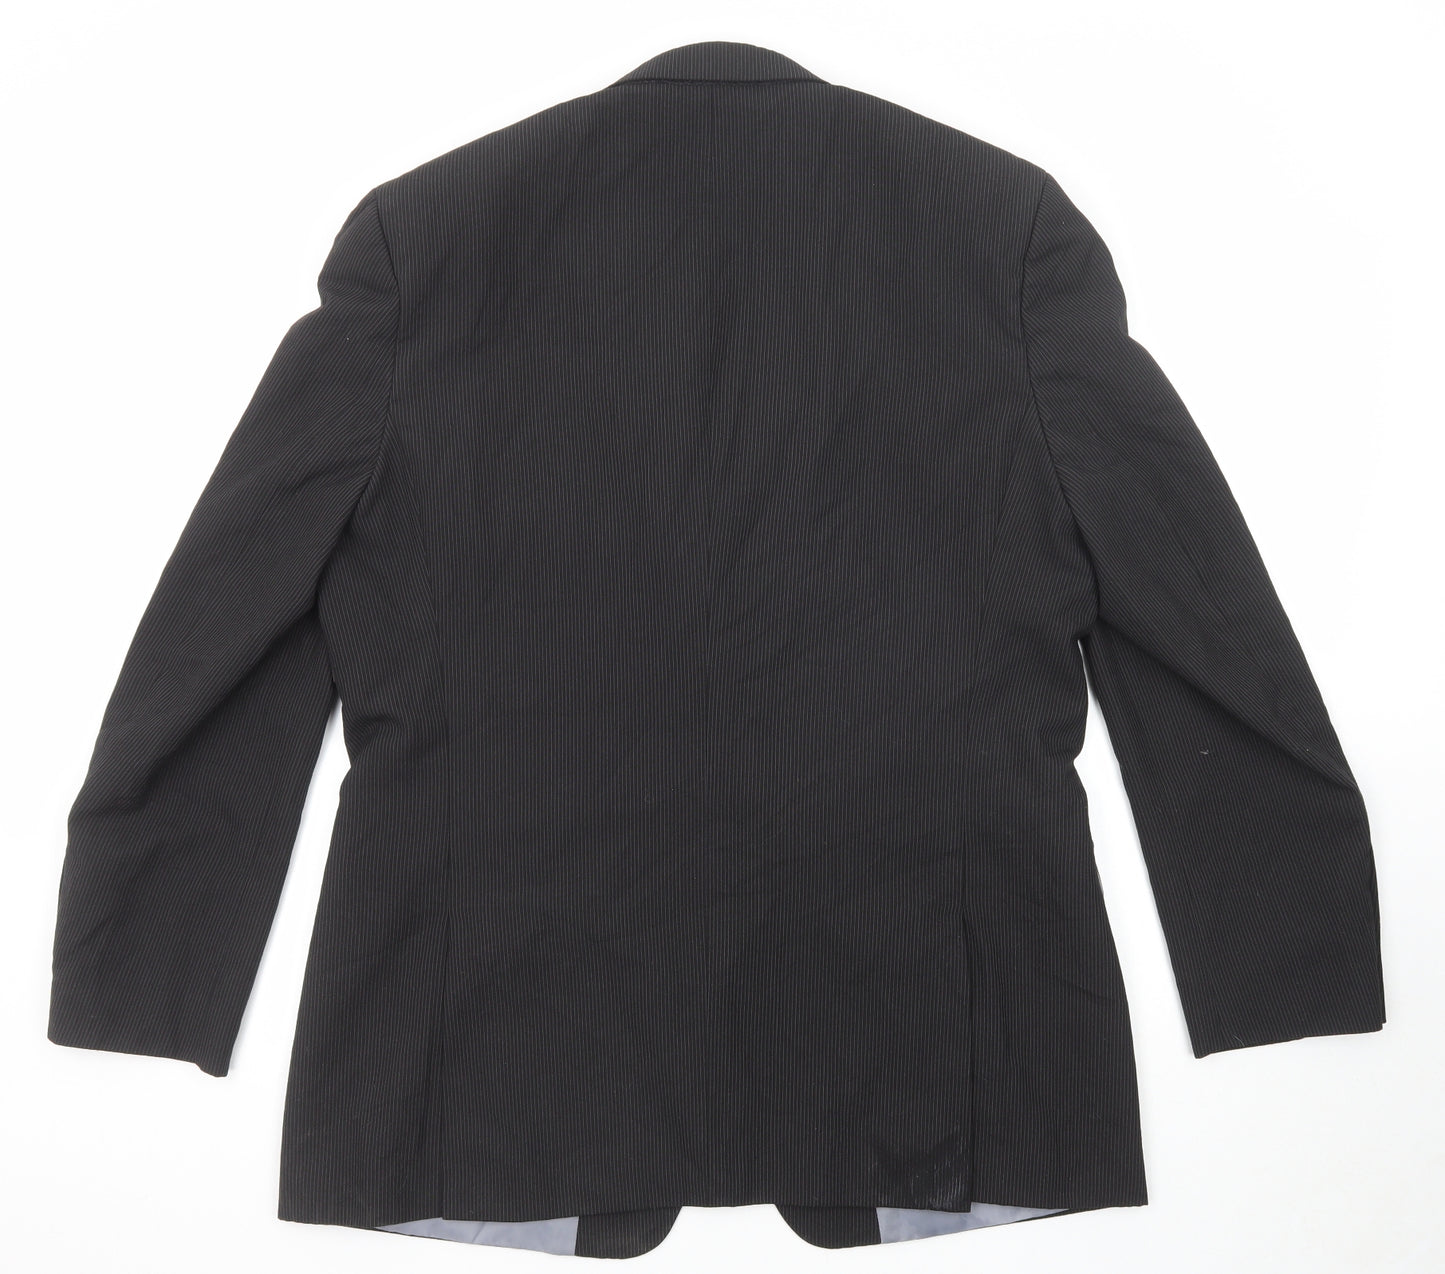 BHS Mens Black Striped Polyester Jacket Suit Jacket Size 44 Regular